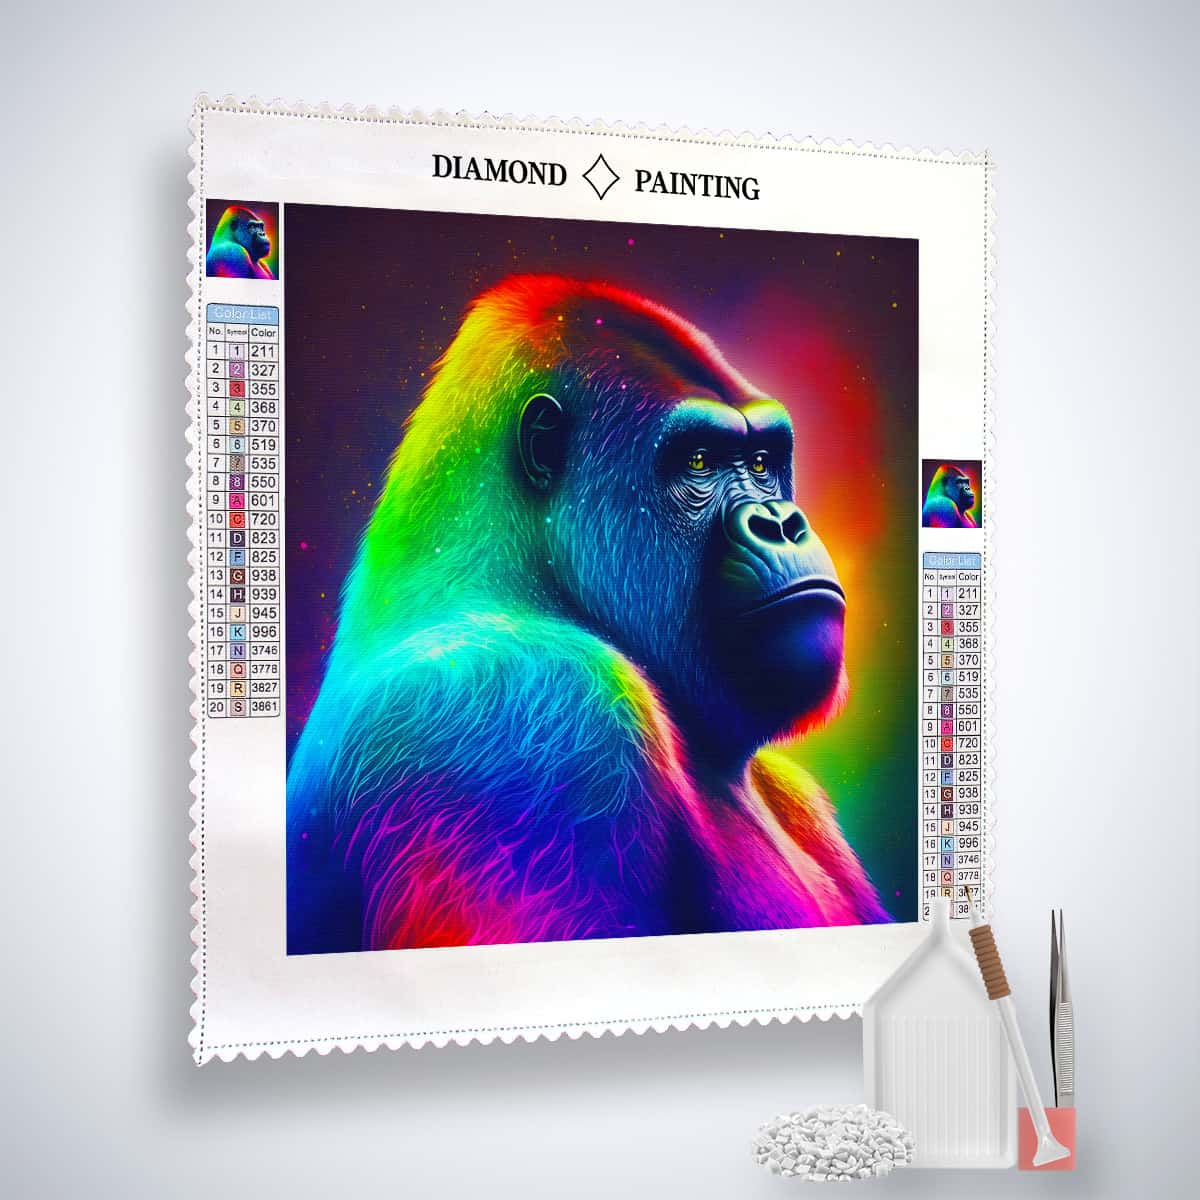 AB Diamond Painting - Neon Gorilla - gedruckt in Ultra-HD - AB Diamond, Affe, Neu eingetroffen, Quadratisch, Tiere